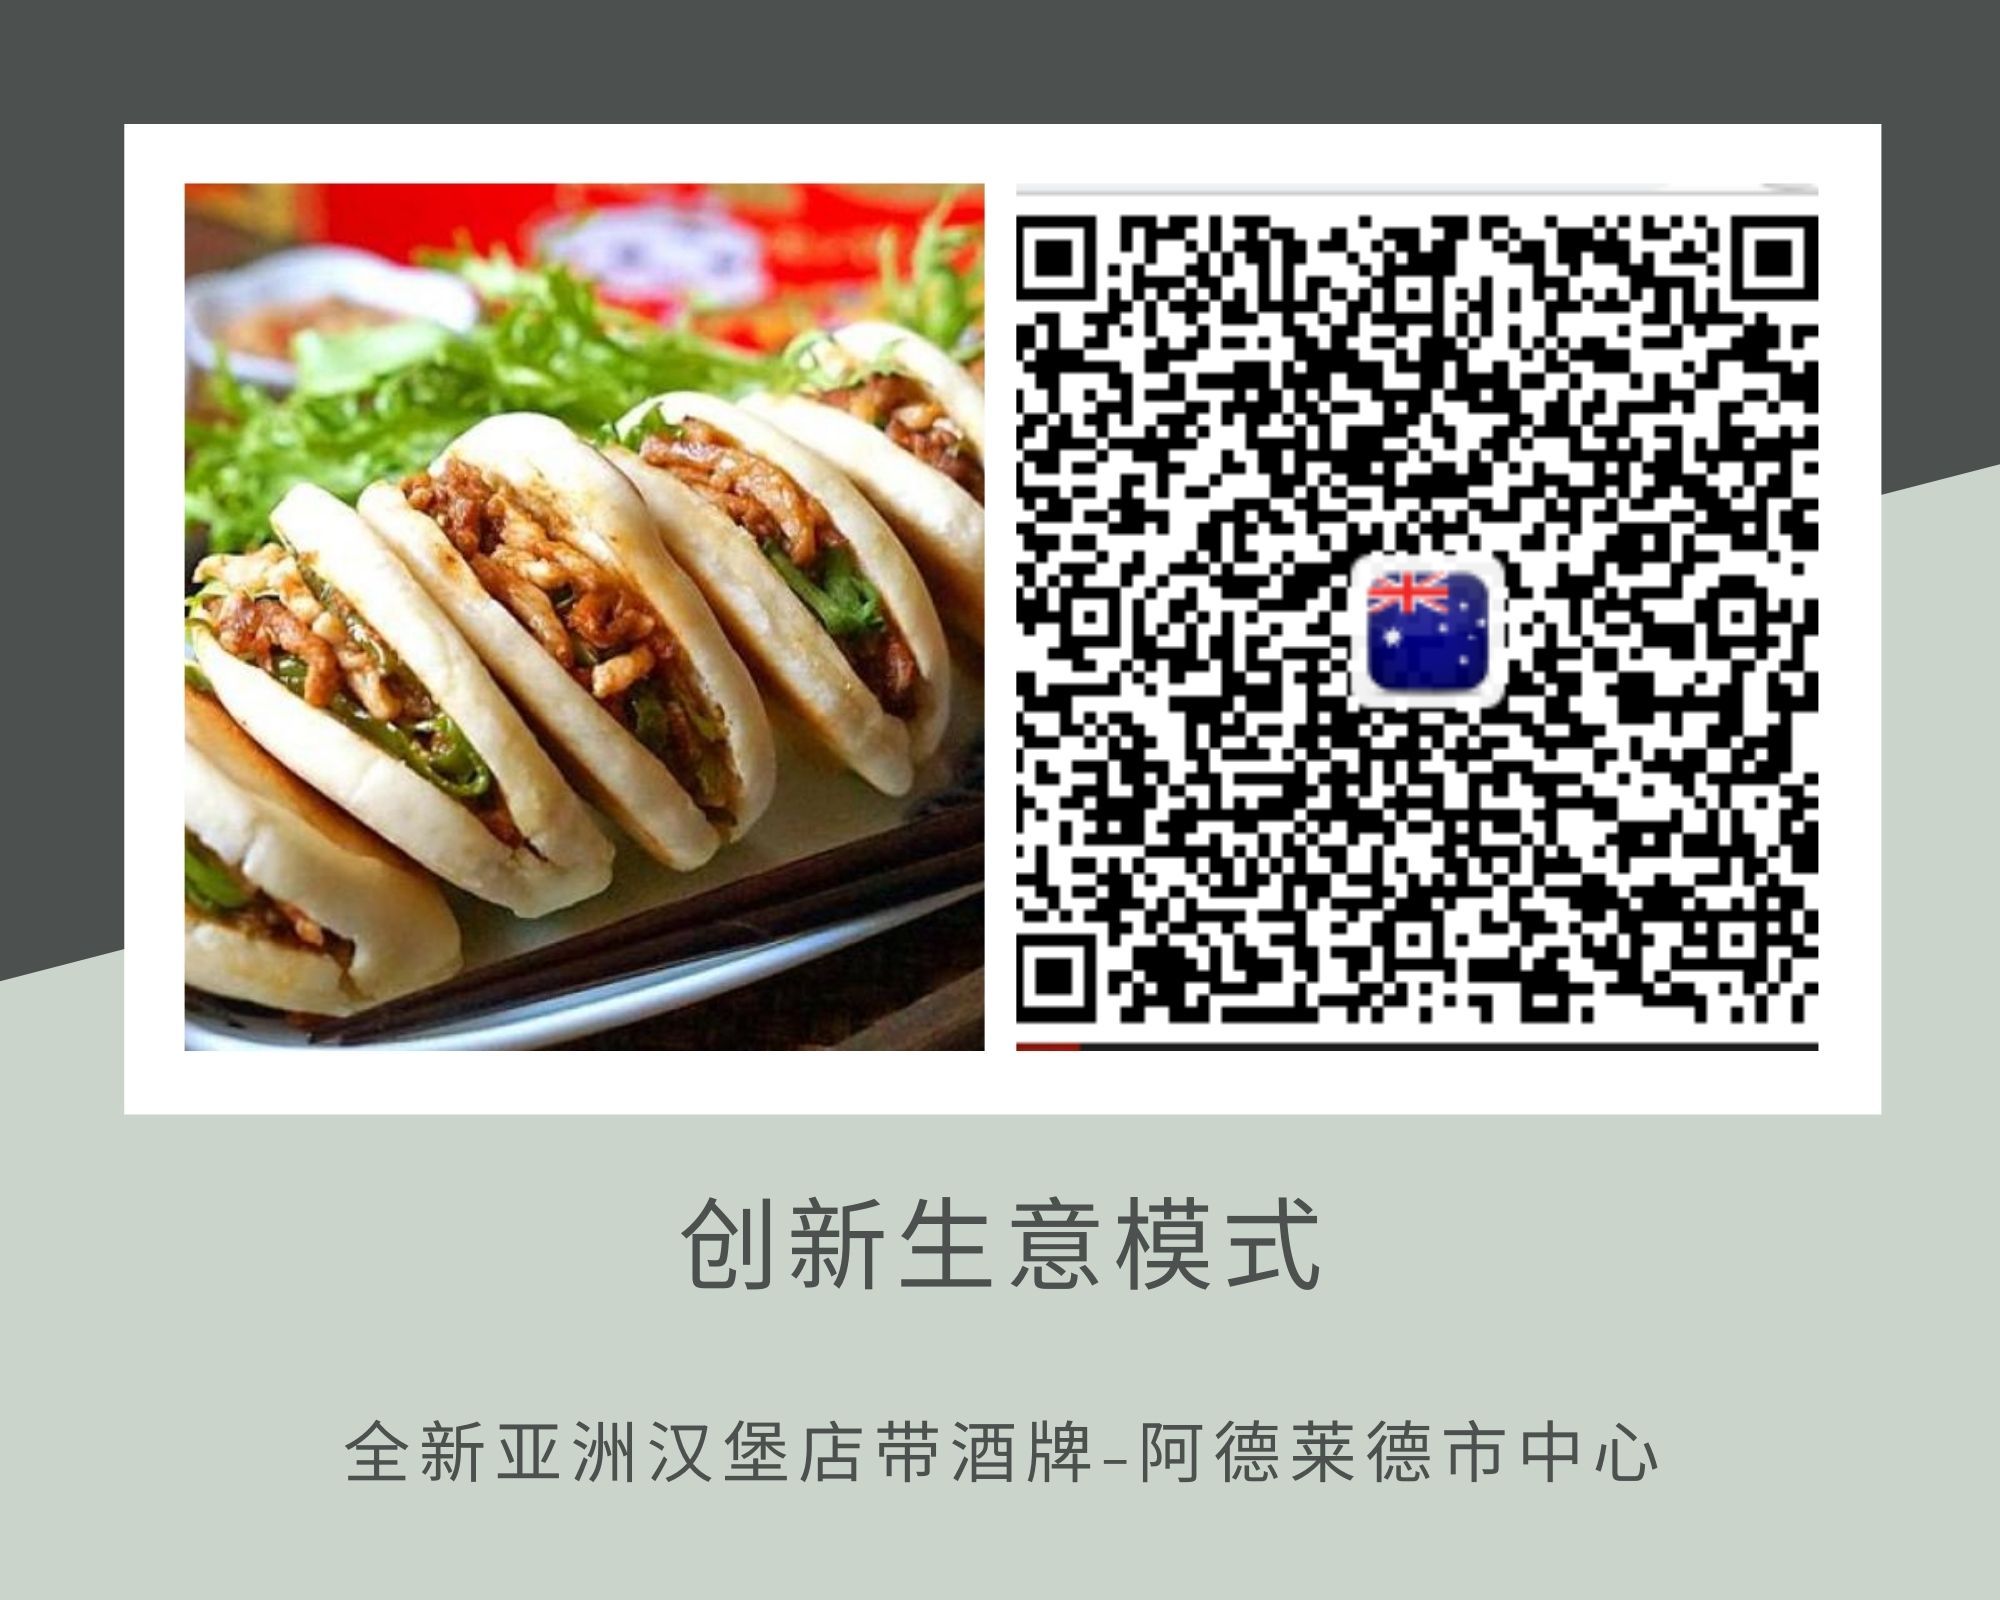 WeChat advert picture.jpg